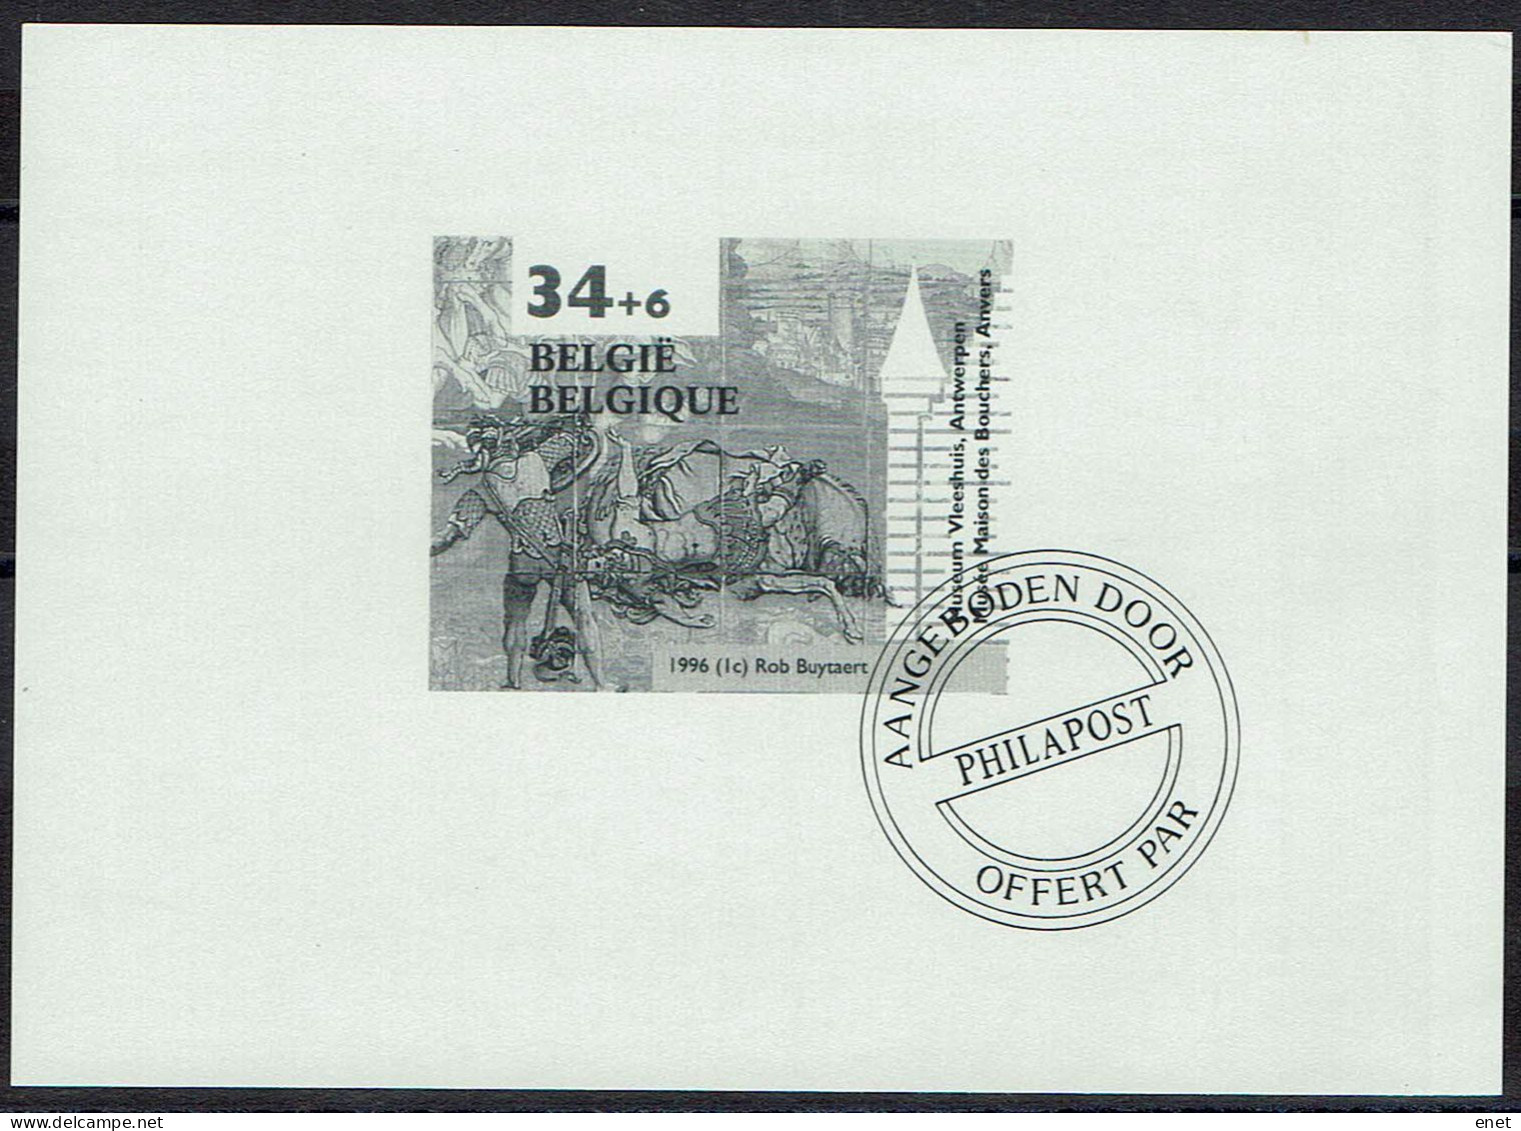 Belgie 1996 - OBP GCA1 (2626) Vleeshuis / Antwerpen - Schwarz-weiß Kleinbögen [ZN & GC]